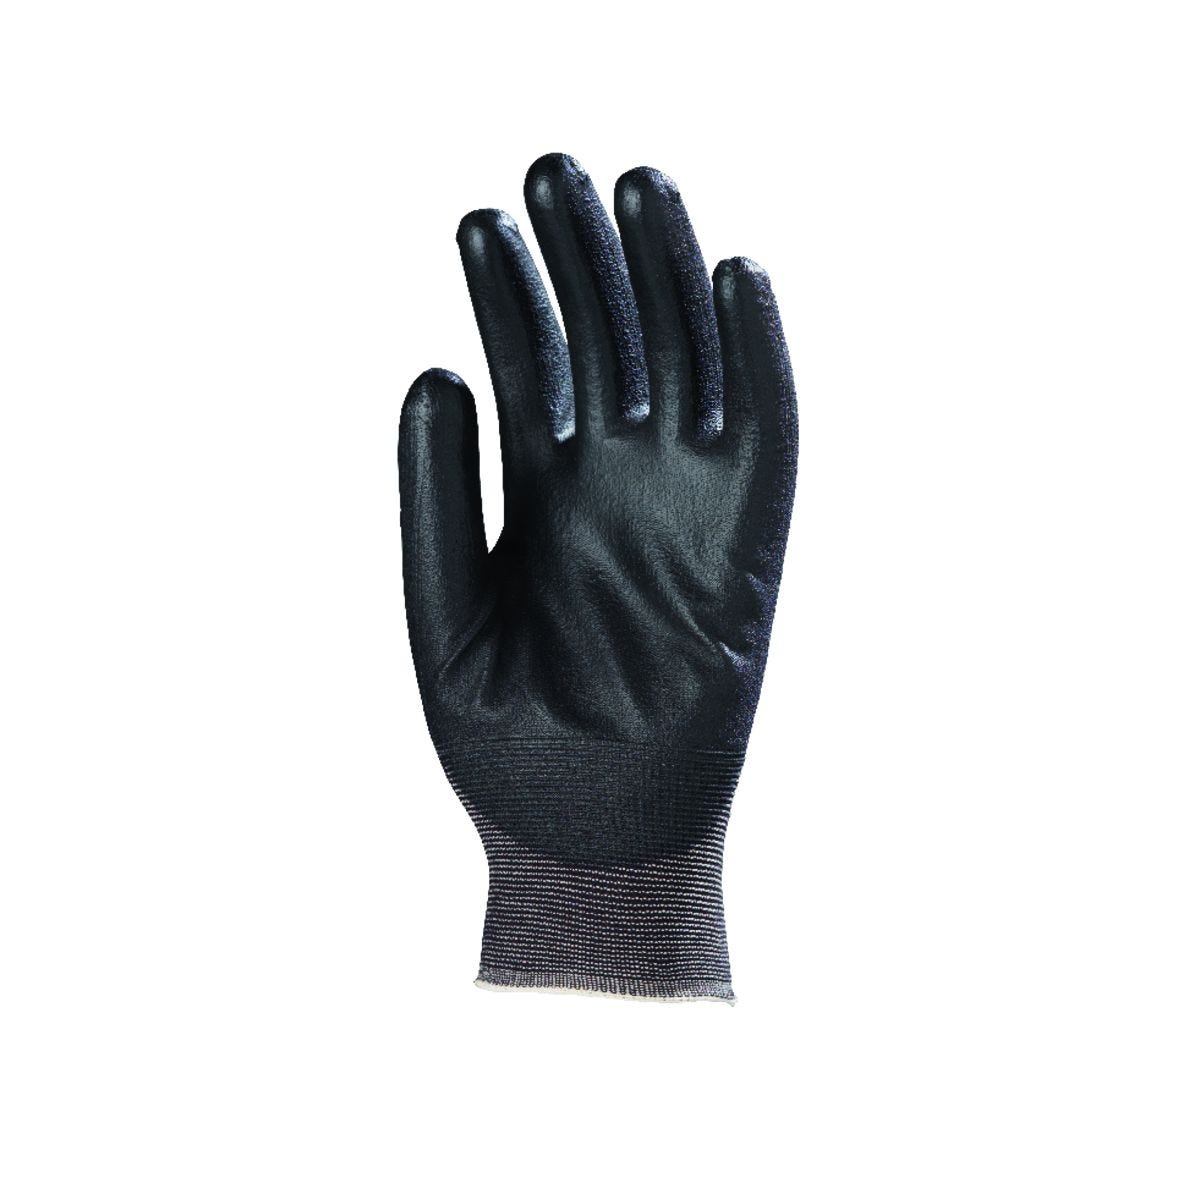 Gants EUROLIGHT nylon noir paume enduite PU noir - COVERGUARD - Taille L-9 1